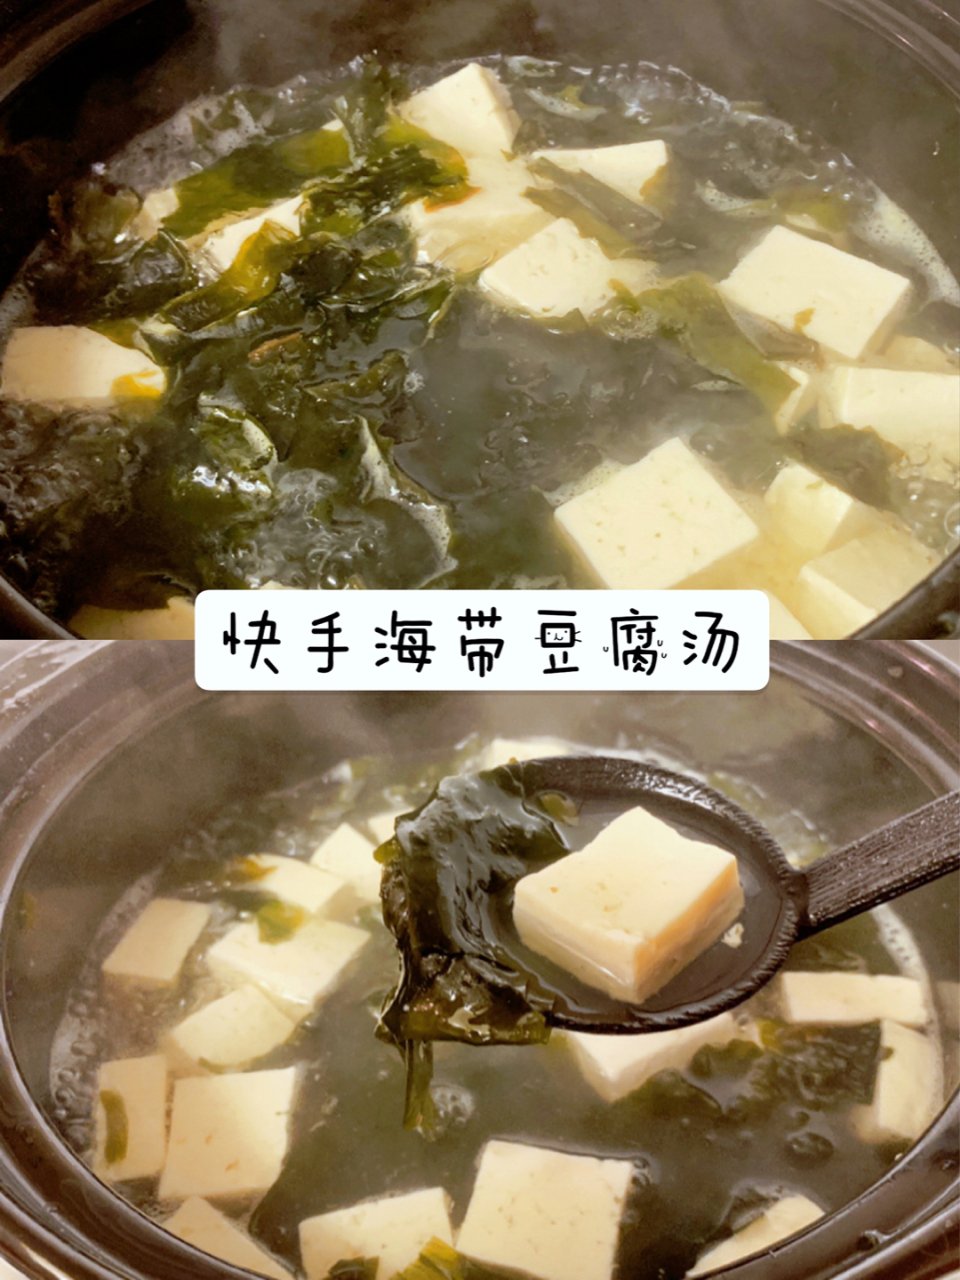 汤鲜味美的速食韩式海带汤...